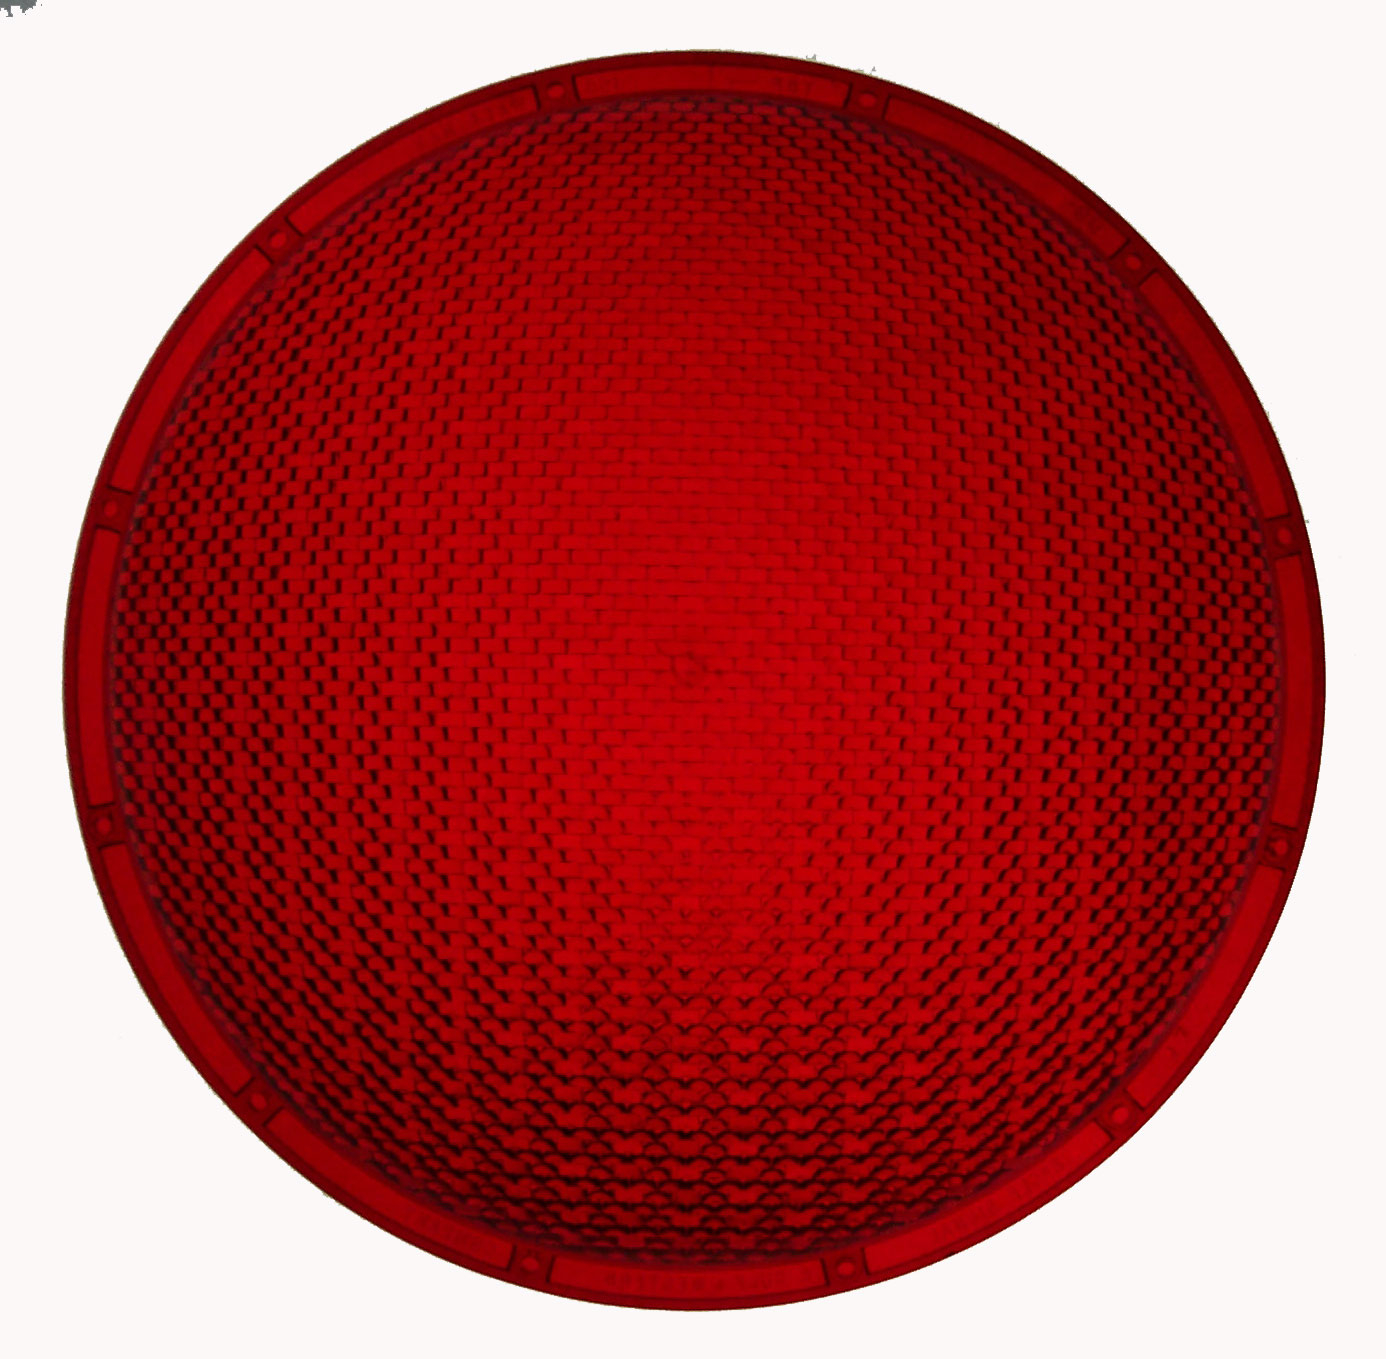 Pix For > Traffic Light Red